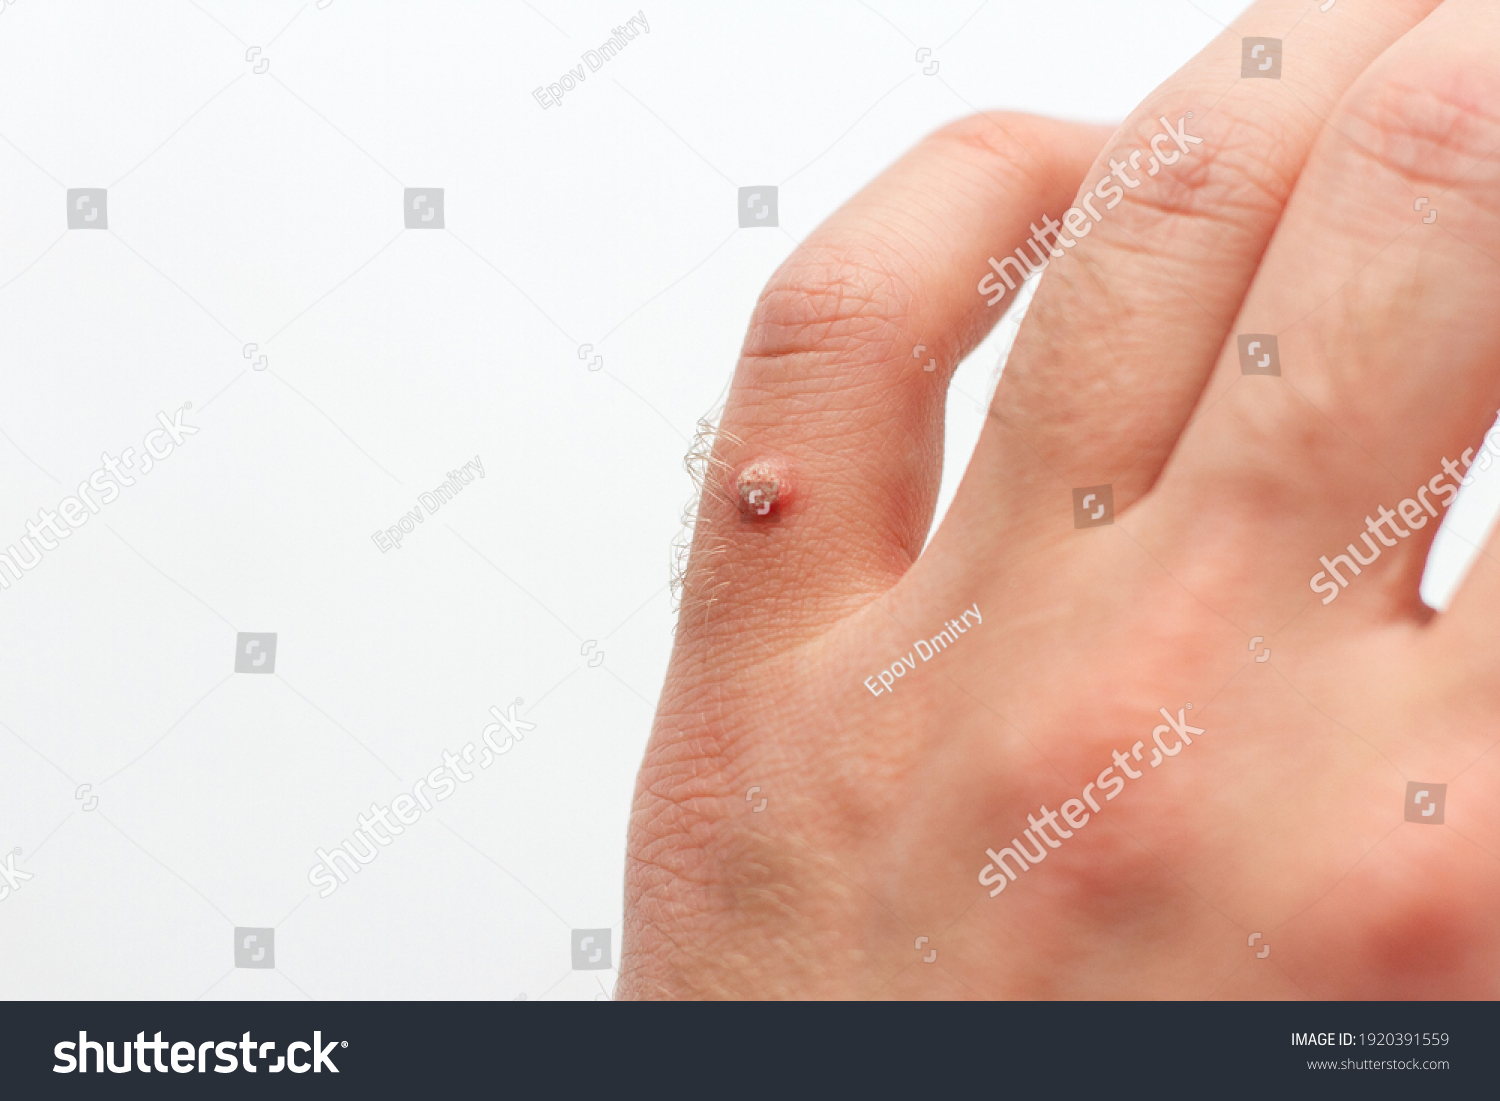 Viral Wart On Hand Finger Wart Foto Stock 1920391559 Shutterstock